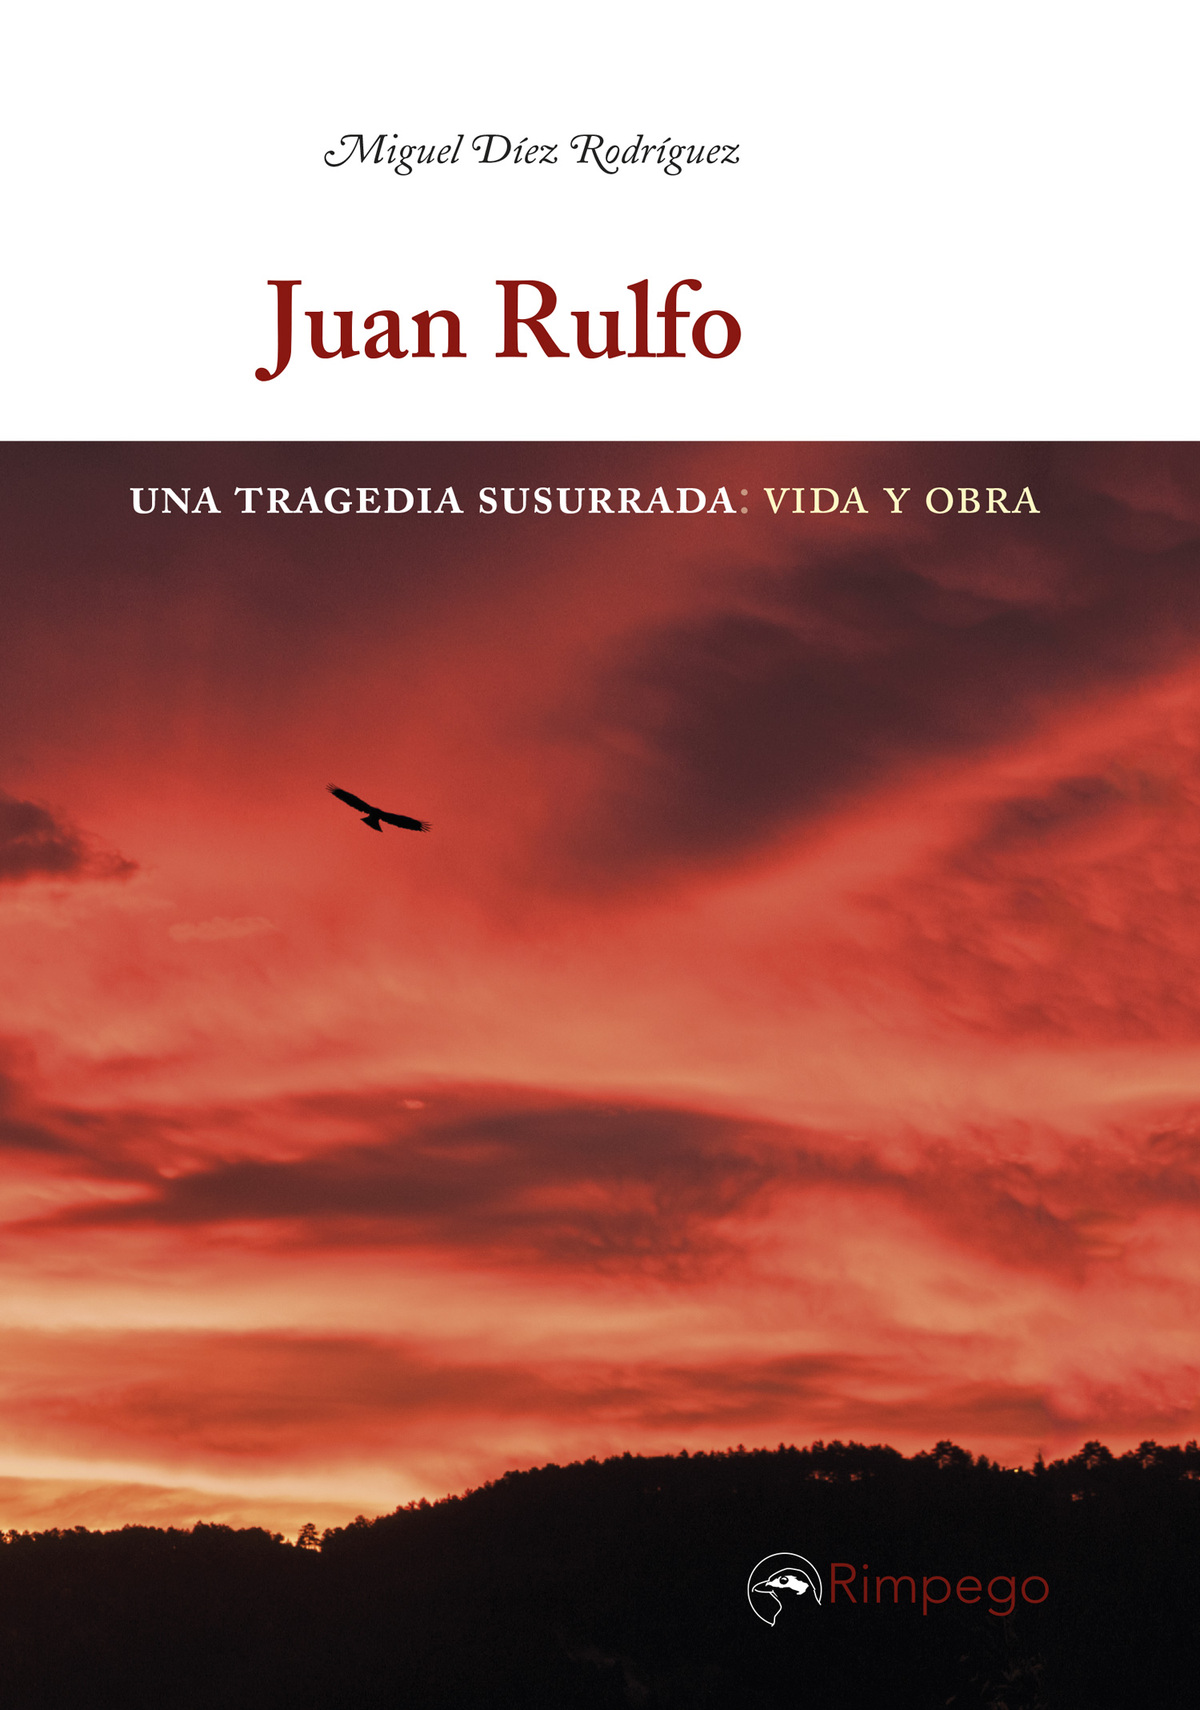 Juan Rulfo, de Miguel Díez Rodríguez